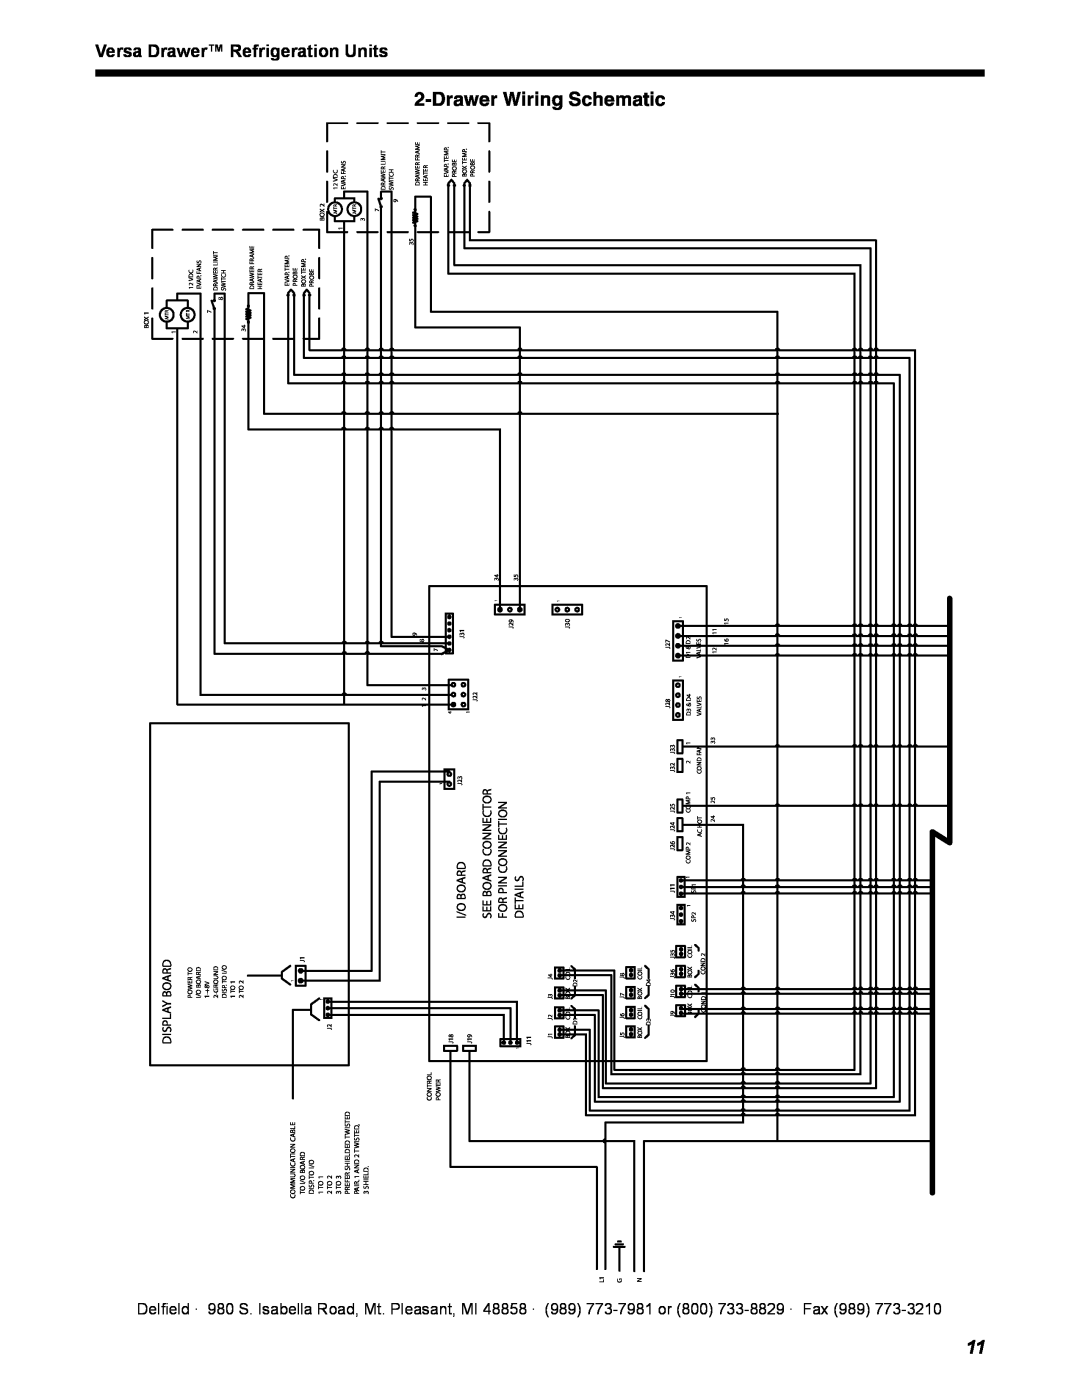 Delfield 18600VD manual Wiring, Drawer, Units, Schematic, Versa, Refrigeration, $%4!,3 